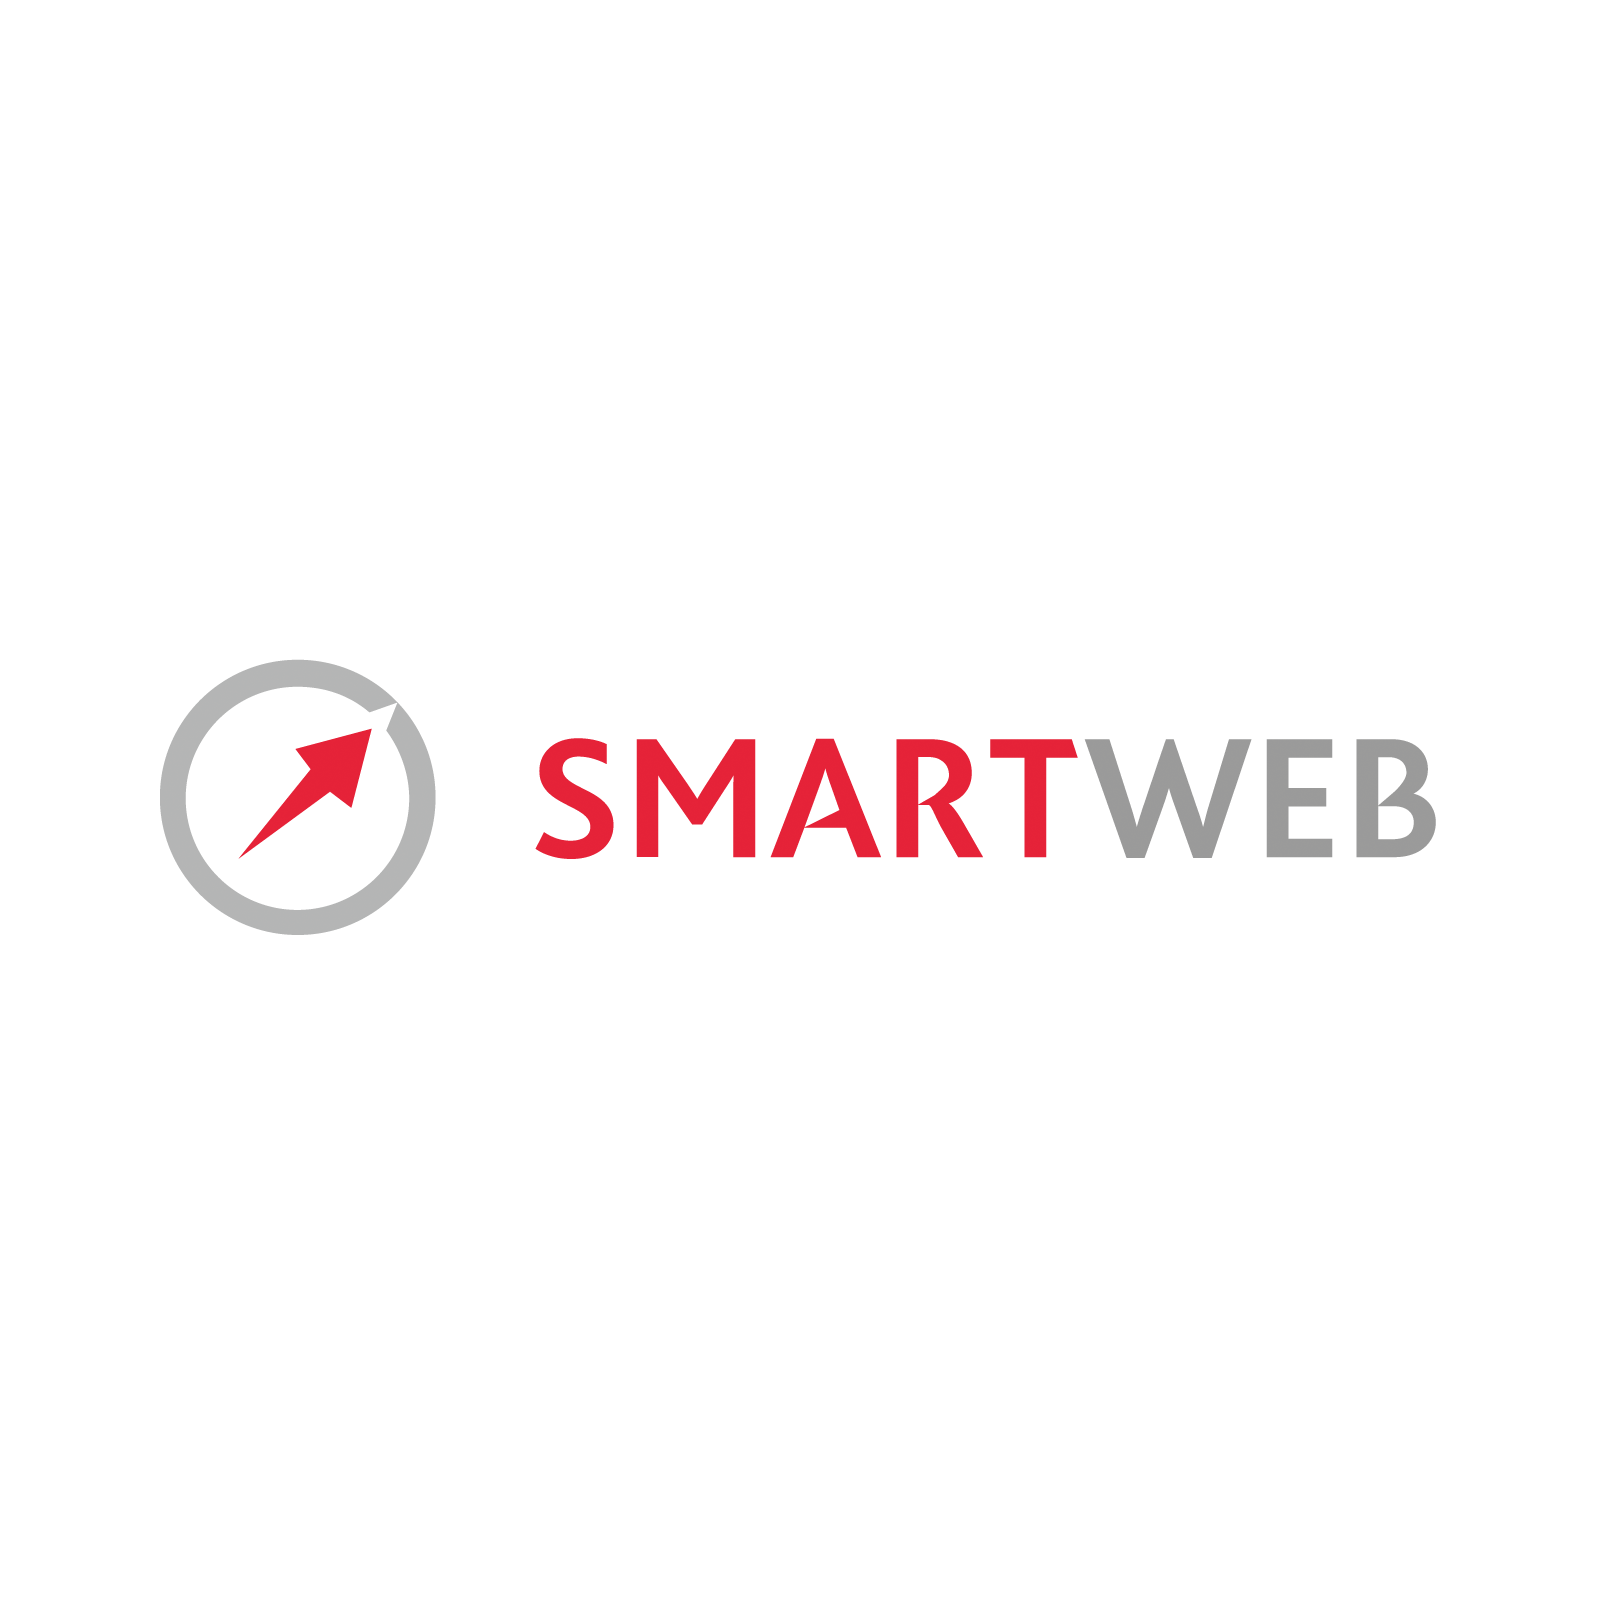 SmartWeb Worldwide